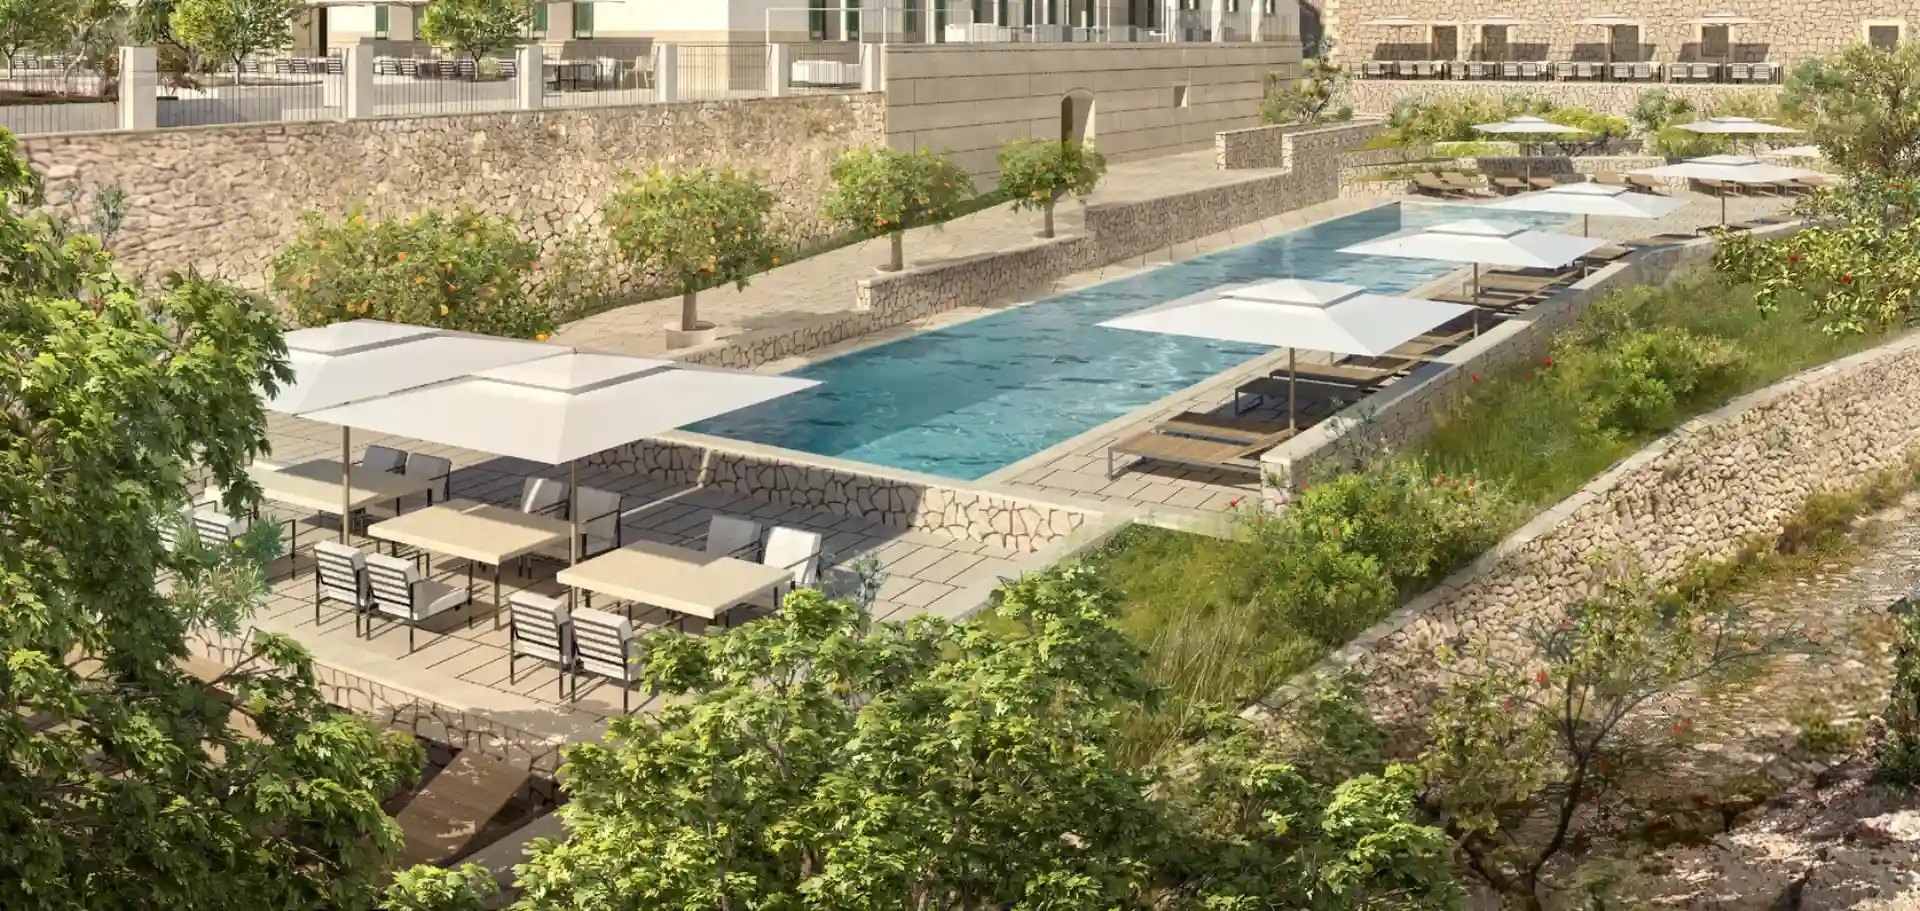 Cómo será el nuevo hotel de Richard Branson que abre en Mallorca